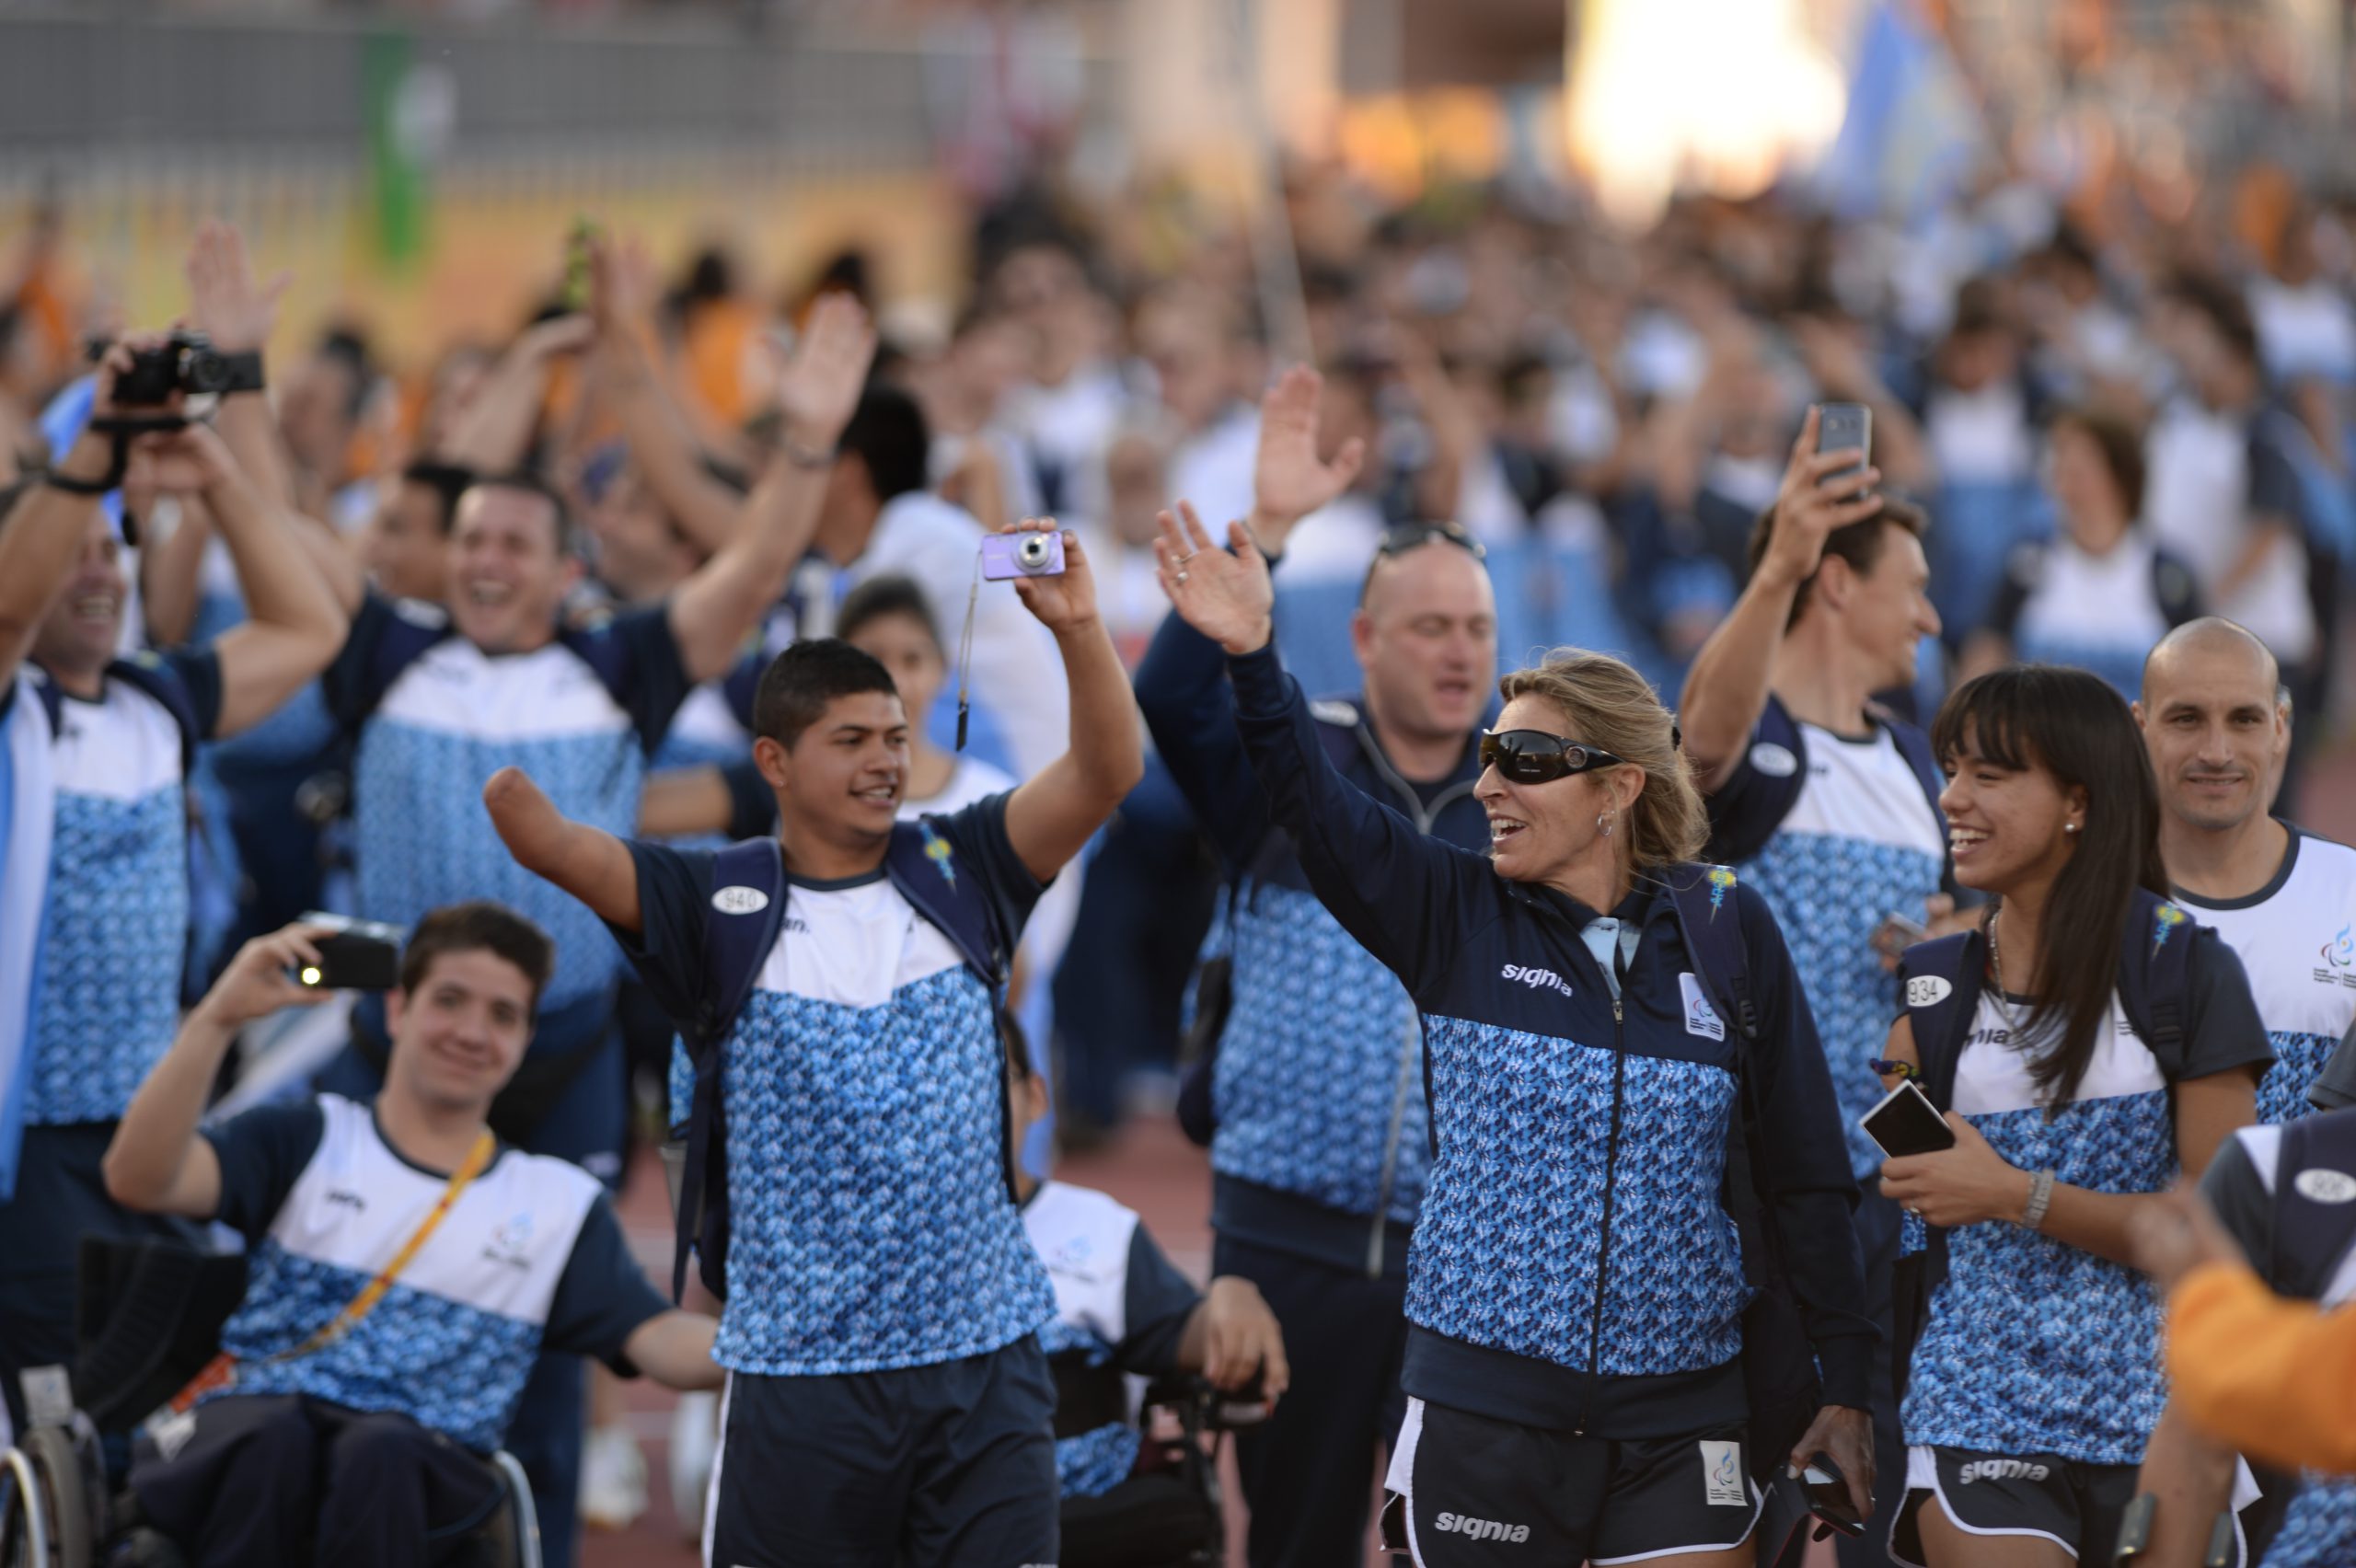 Nota: Juegos Paralímpicos Río 2016: definida la delegación argentina, con 85 atletas y 15 deportes